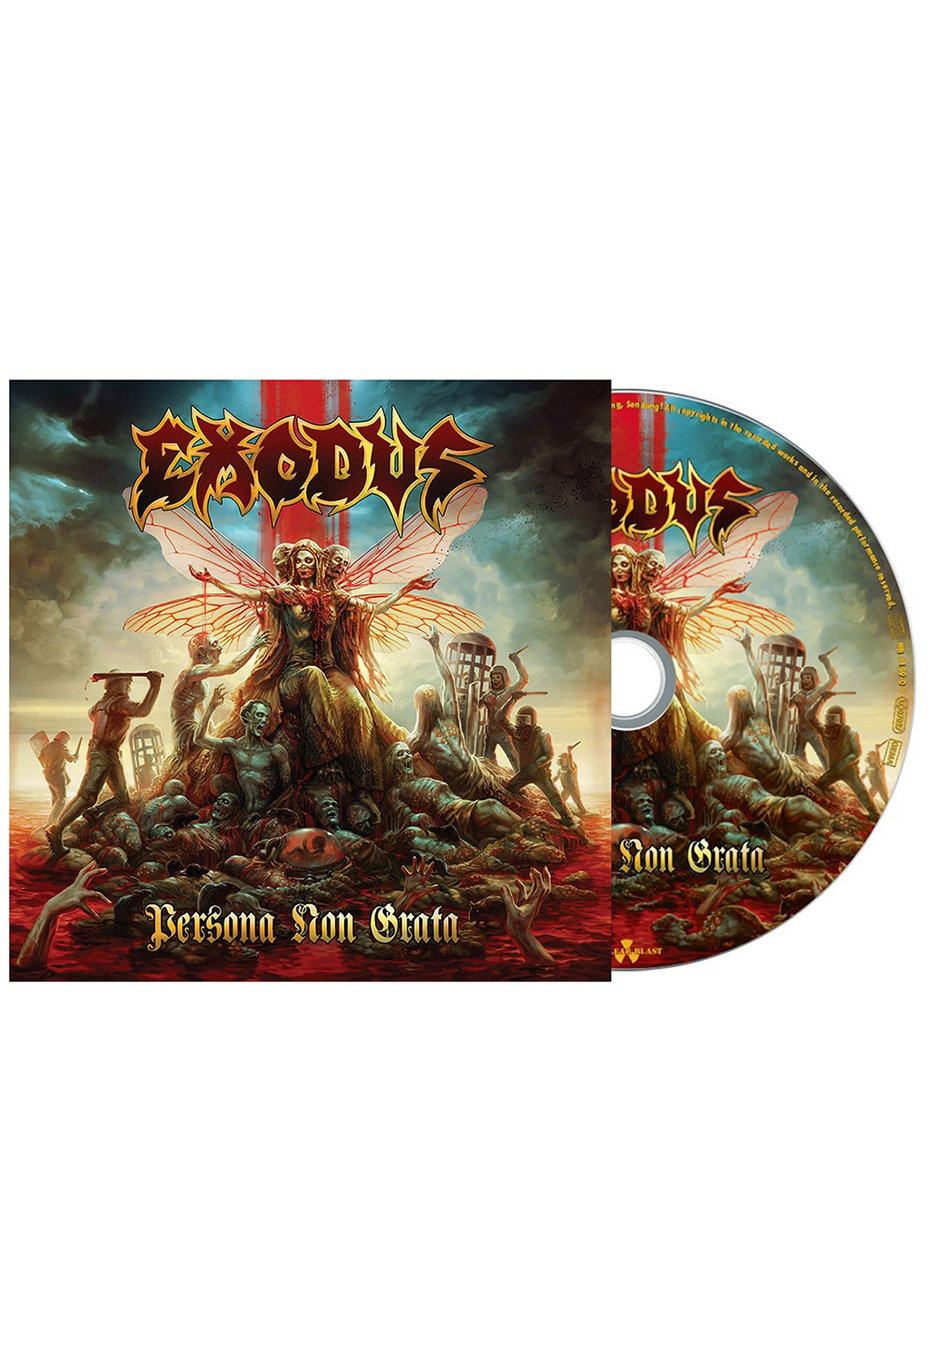 Exodus - Persona Non Grata - CD